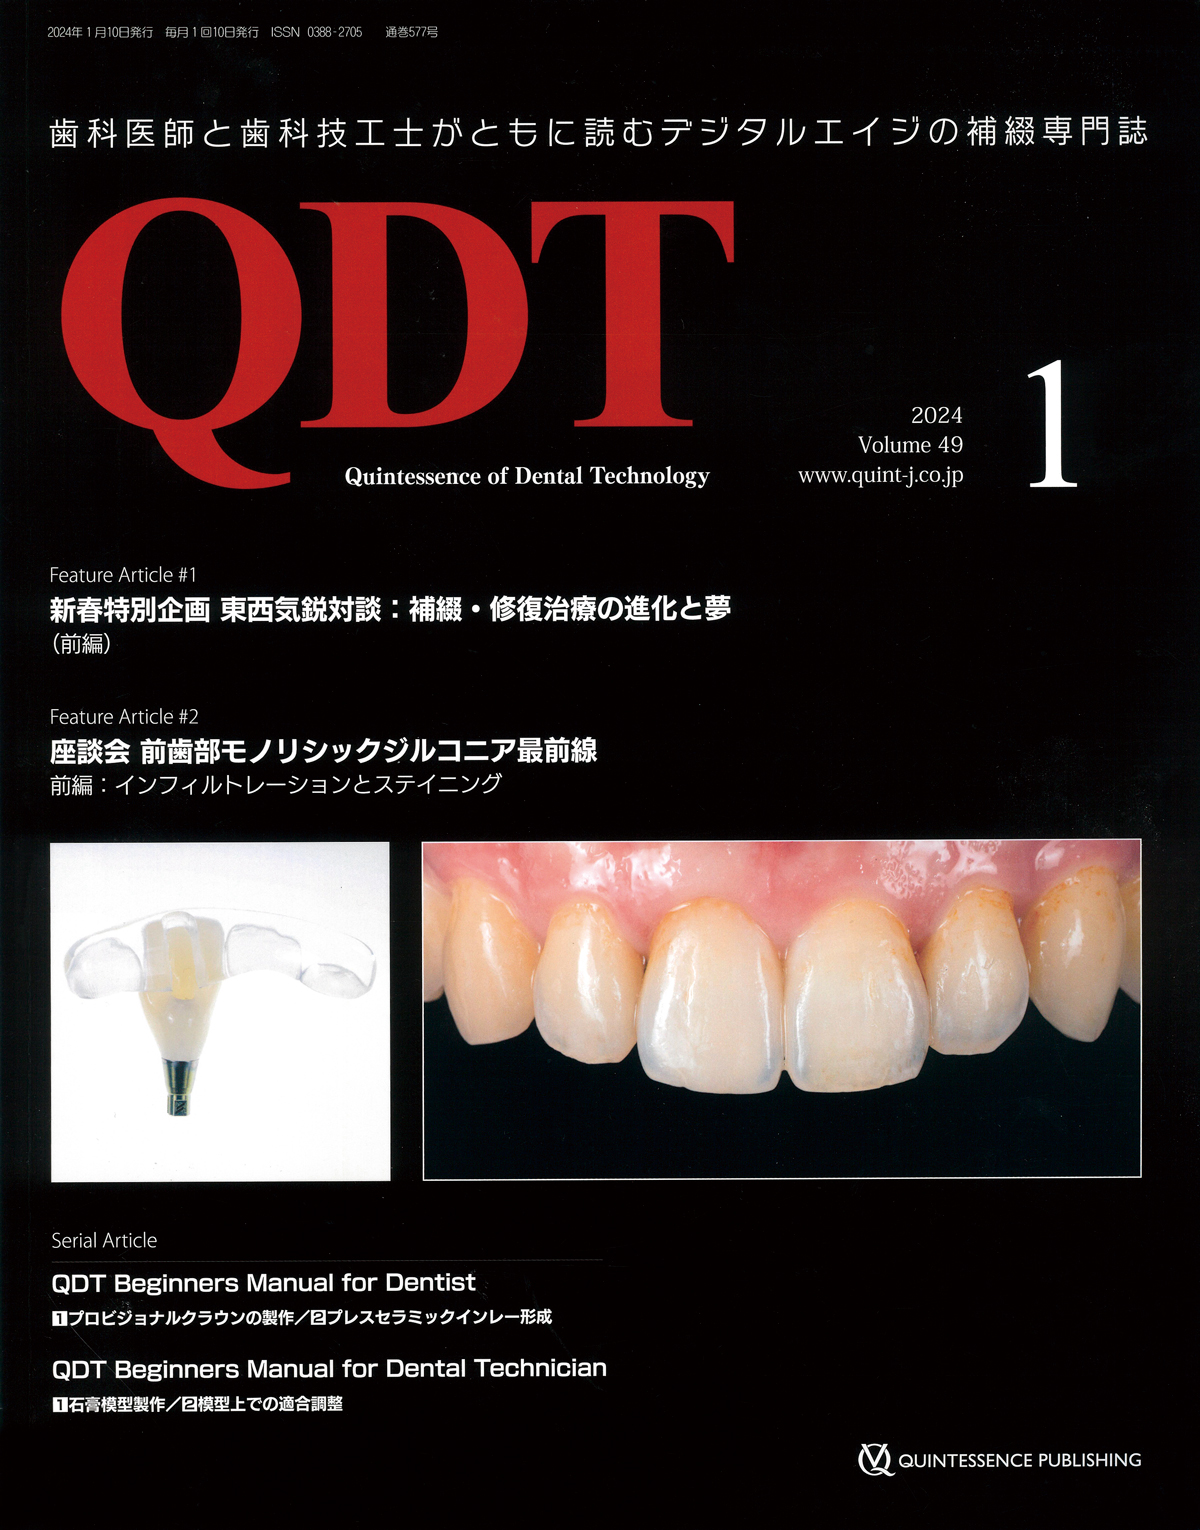 徳真会グループ歯科技工士 林 直樹の症例論文が歯科医療専門誌「QDT 